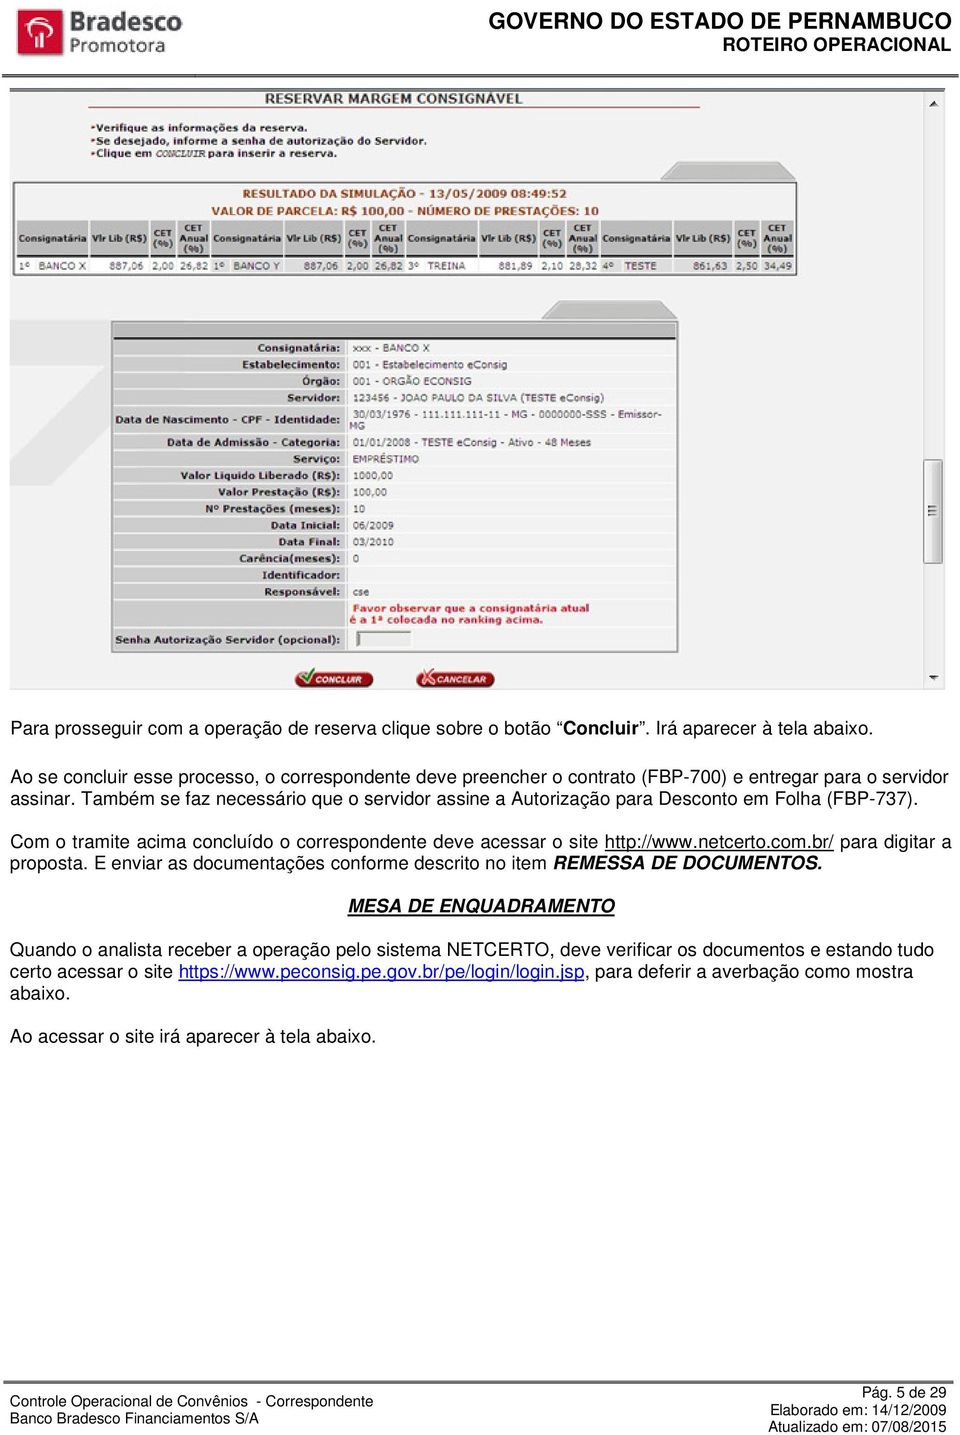 Também se faz necessário que o servidor assine a Autorização para Desconto em Folha (FBP-737). Com o tramite acima concluído o correspondente deve acessar o site http://www.netcerto.com.